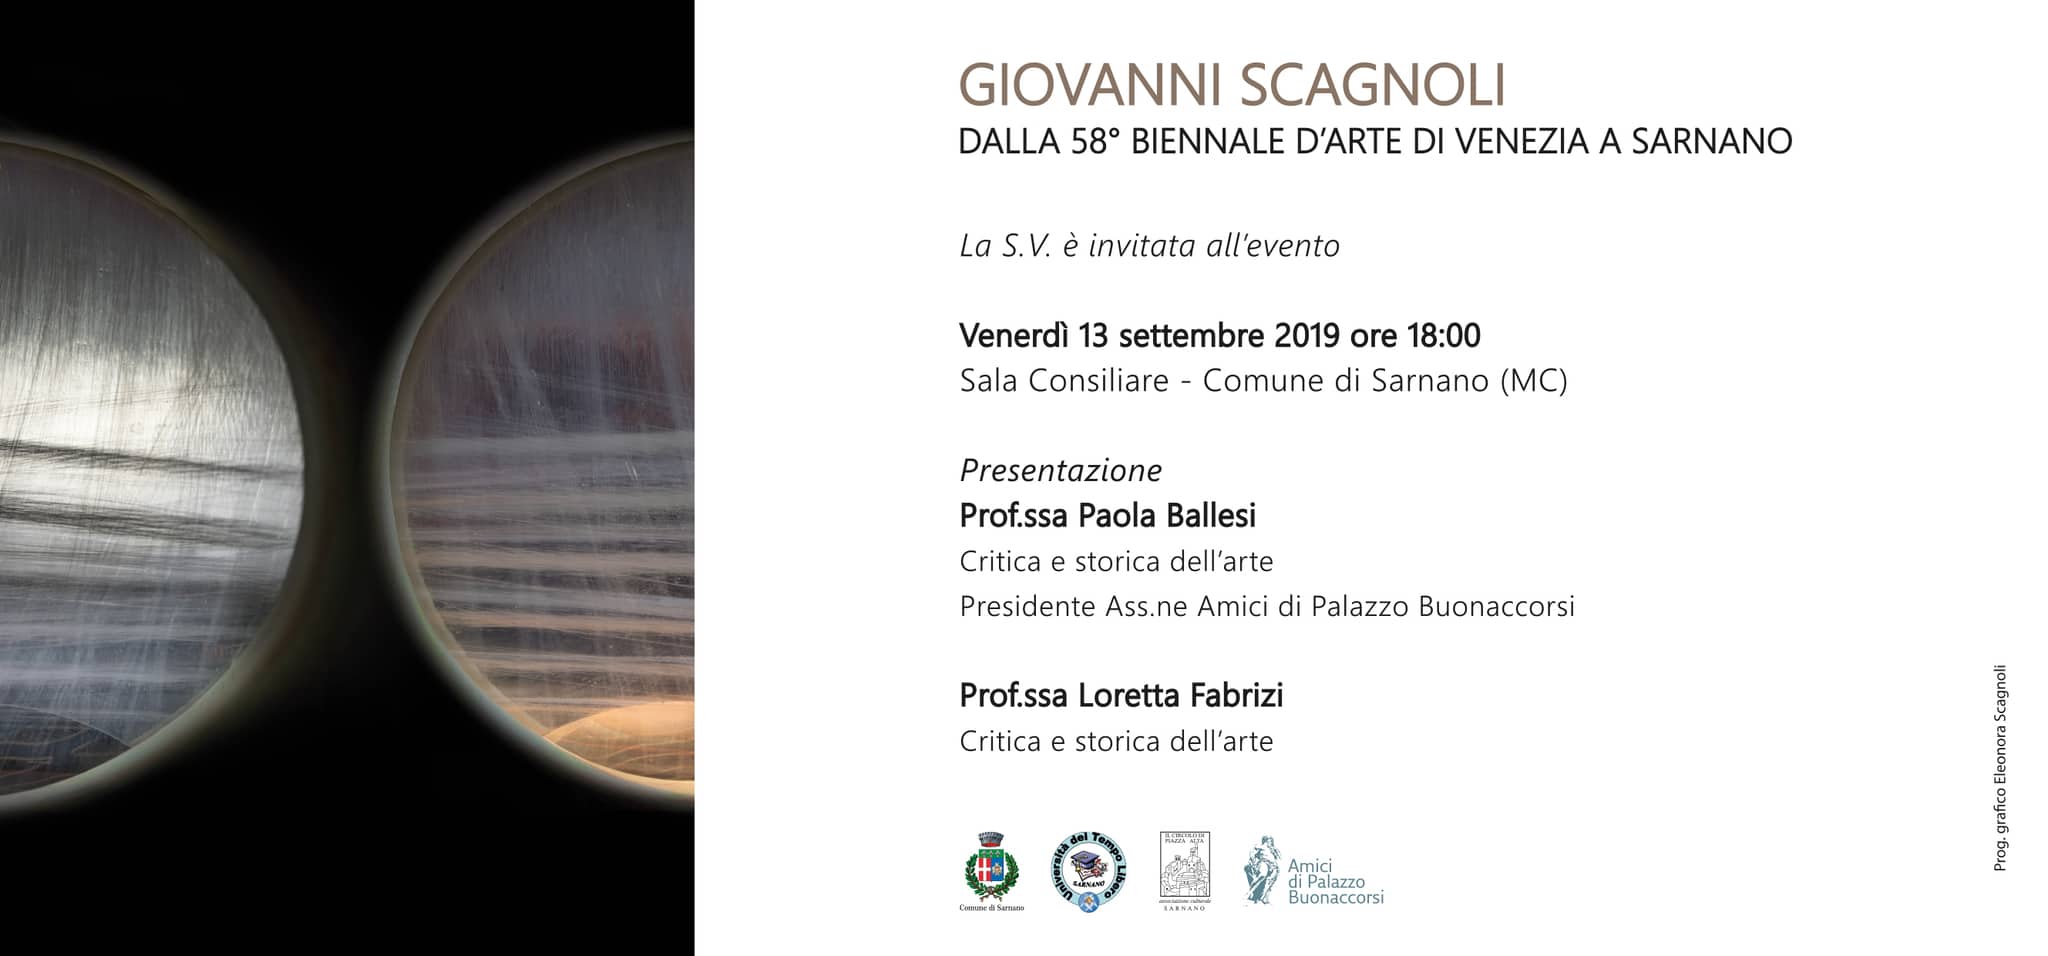 Giovanni Scagnoli dalla 58^ Biennale di Venezia a Sarnano